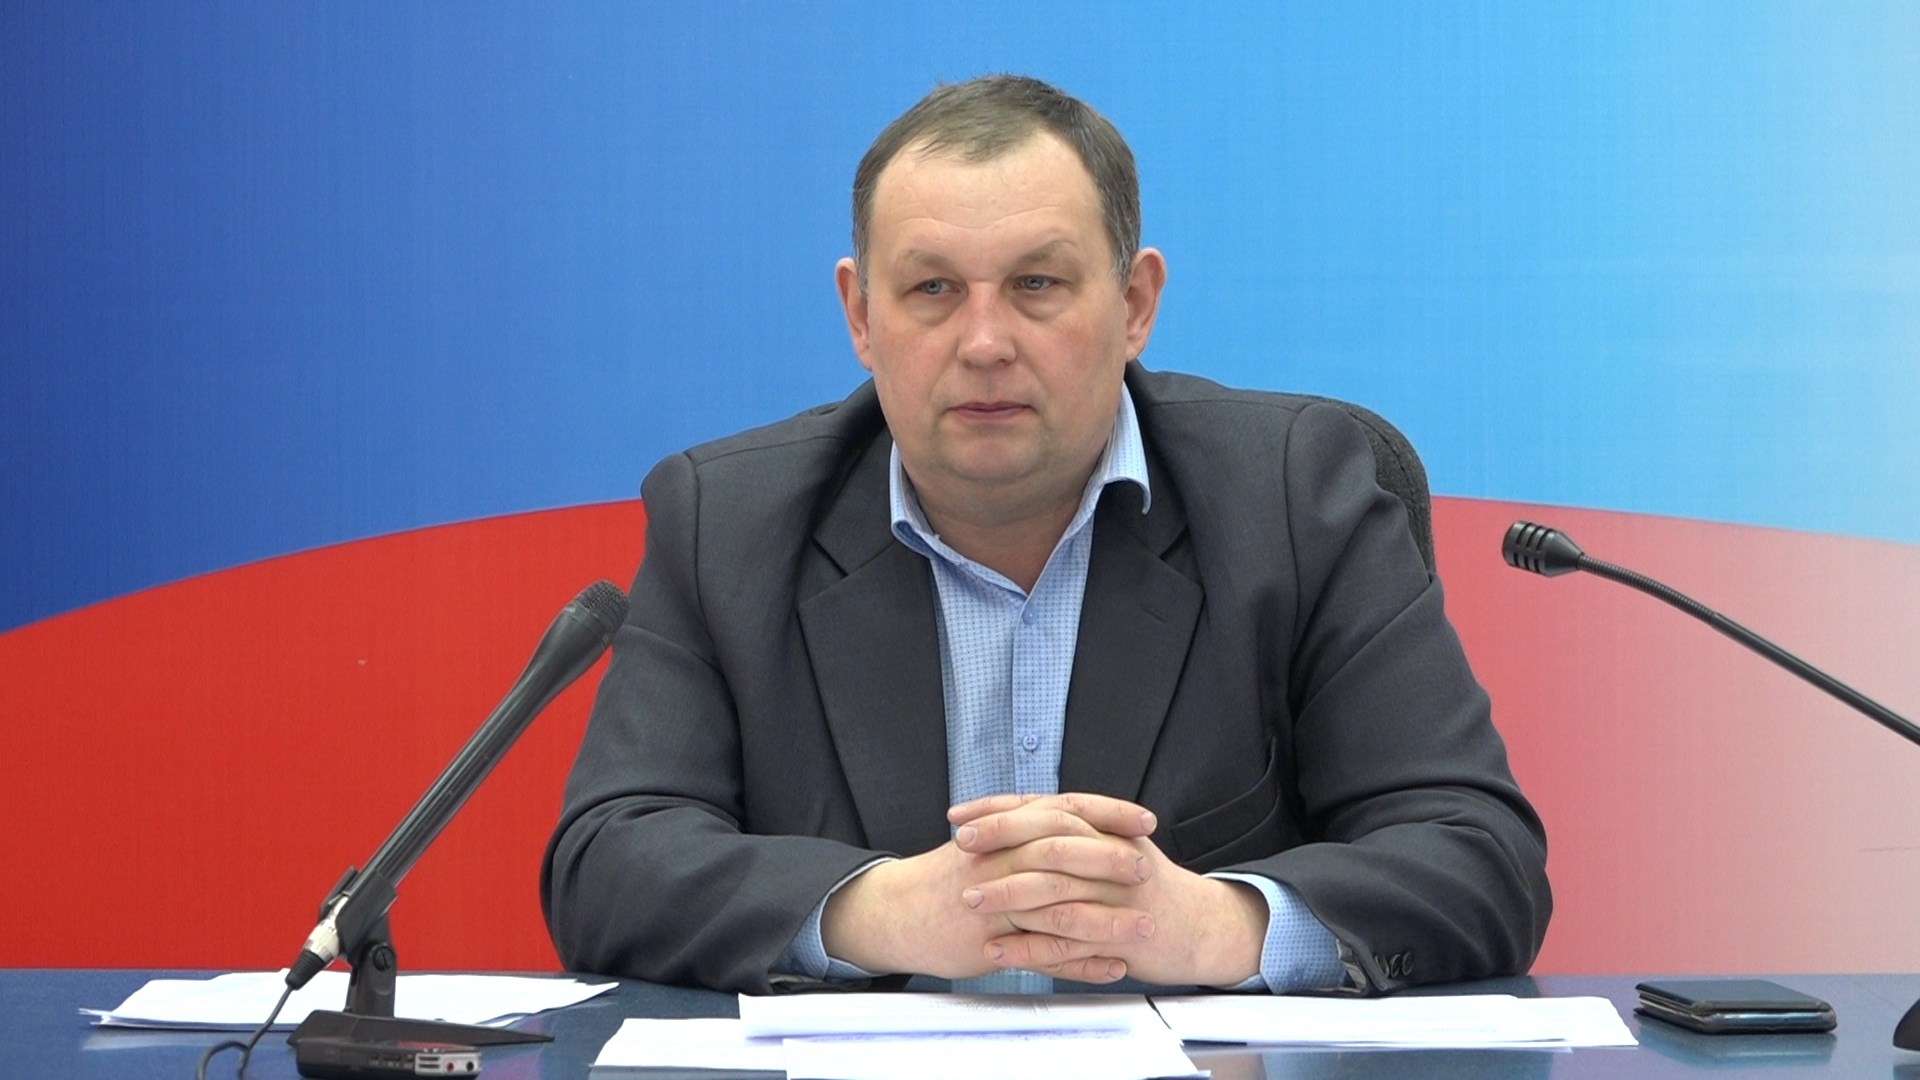 Заместитель главы администрации города Кузнецка Алексей Салмин провел брифинг для журналистов